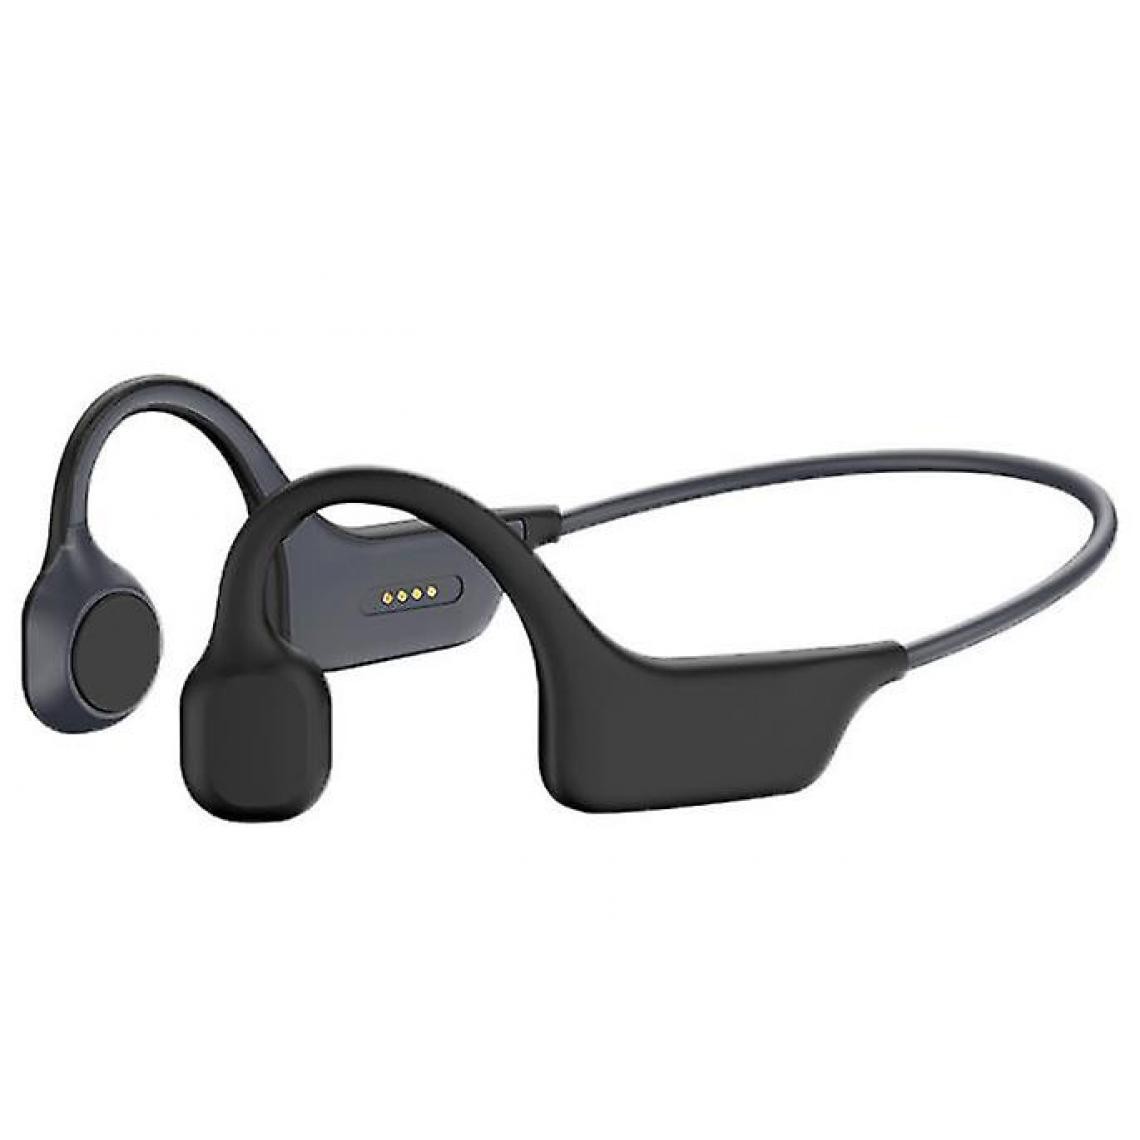 Universal - Casque Bluetooth à conduction osseuse, bouchon d'oreille sans fil, casque Bluetooth intelligent, mouvement (noir) - Micro-Casque